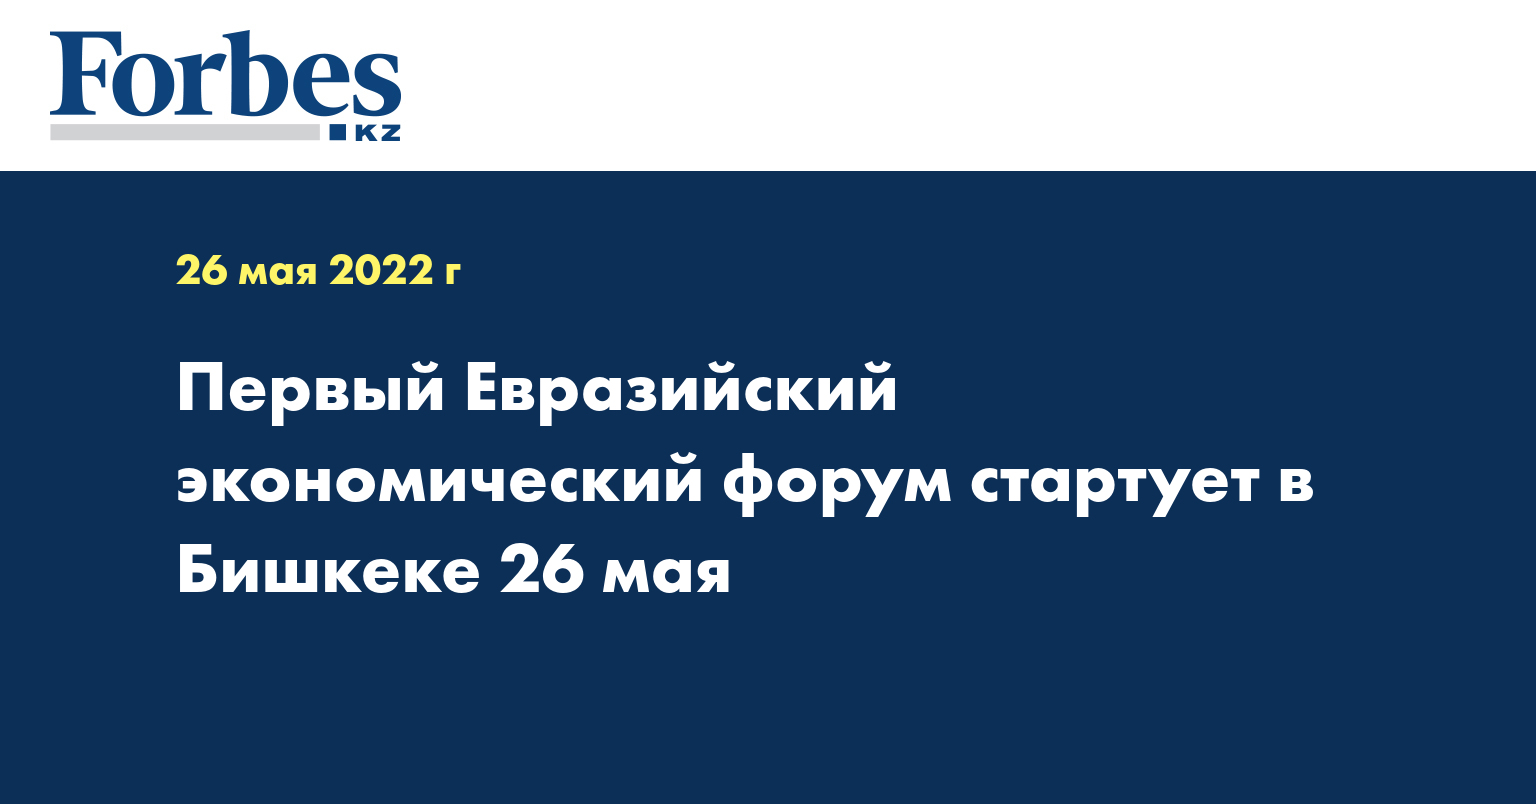 Первый Евразийский экономический форум стартует в Бишкеке 26 мая